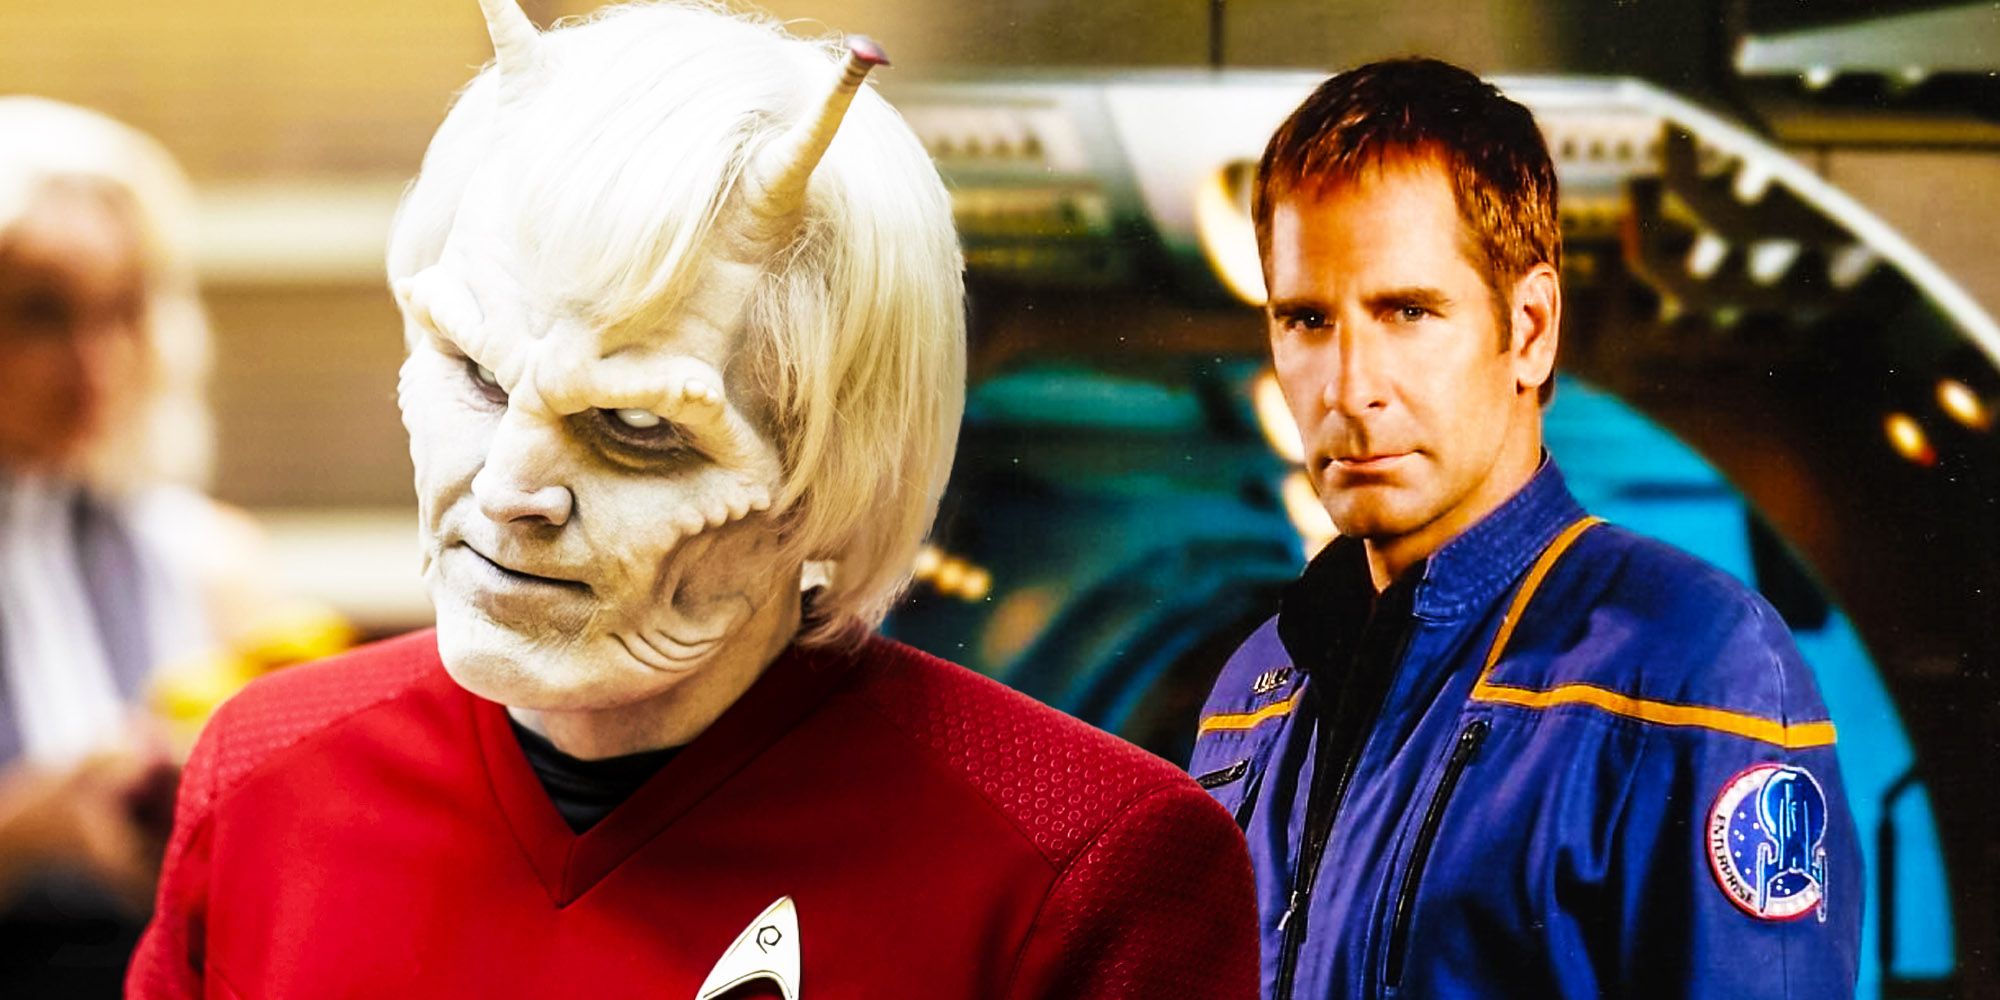 Lt. Hemmer on Strange New Worlds in front of Captain Archer from Star Trek: Enterprise